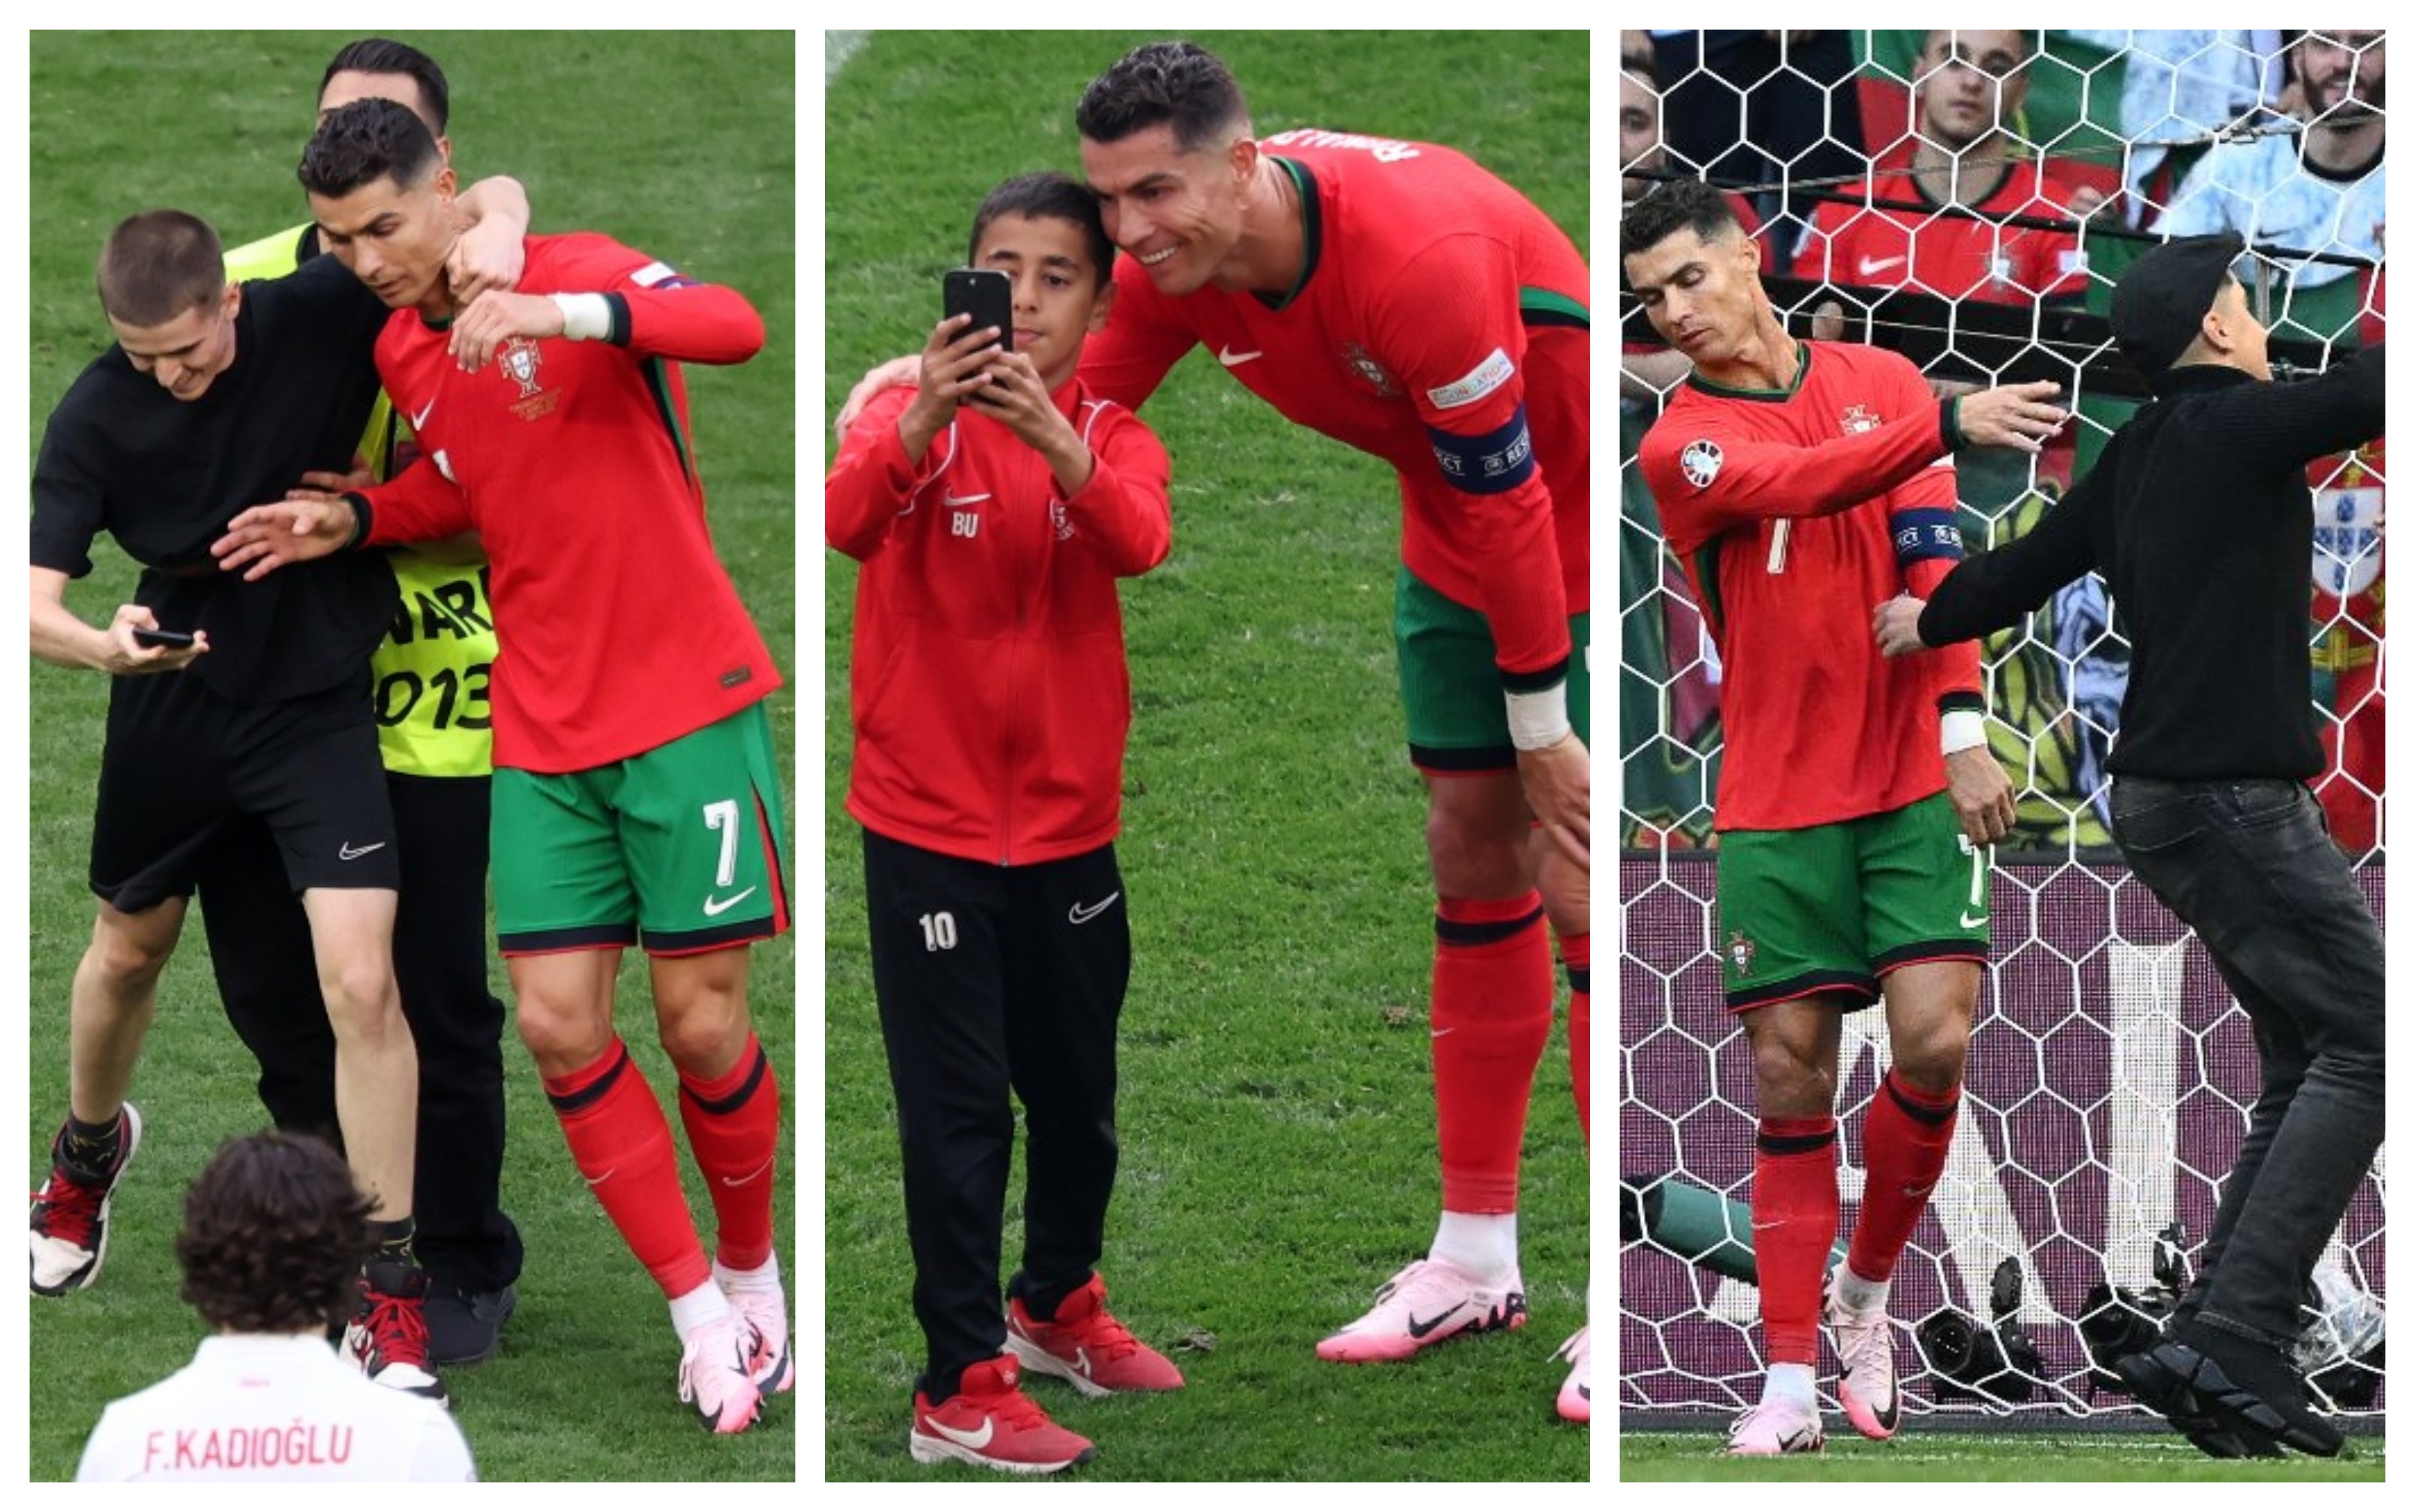 Cristiano Ronaldo fue buscado por los aficionados para tomarse una fotografía. (Fotos Prensa Libre: AFP)